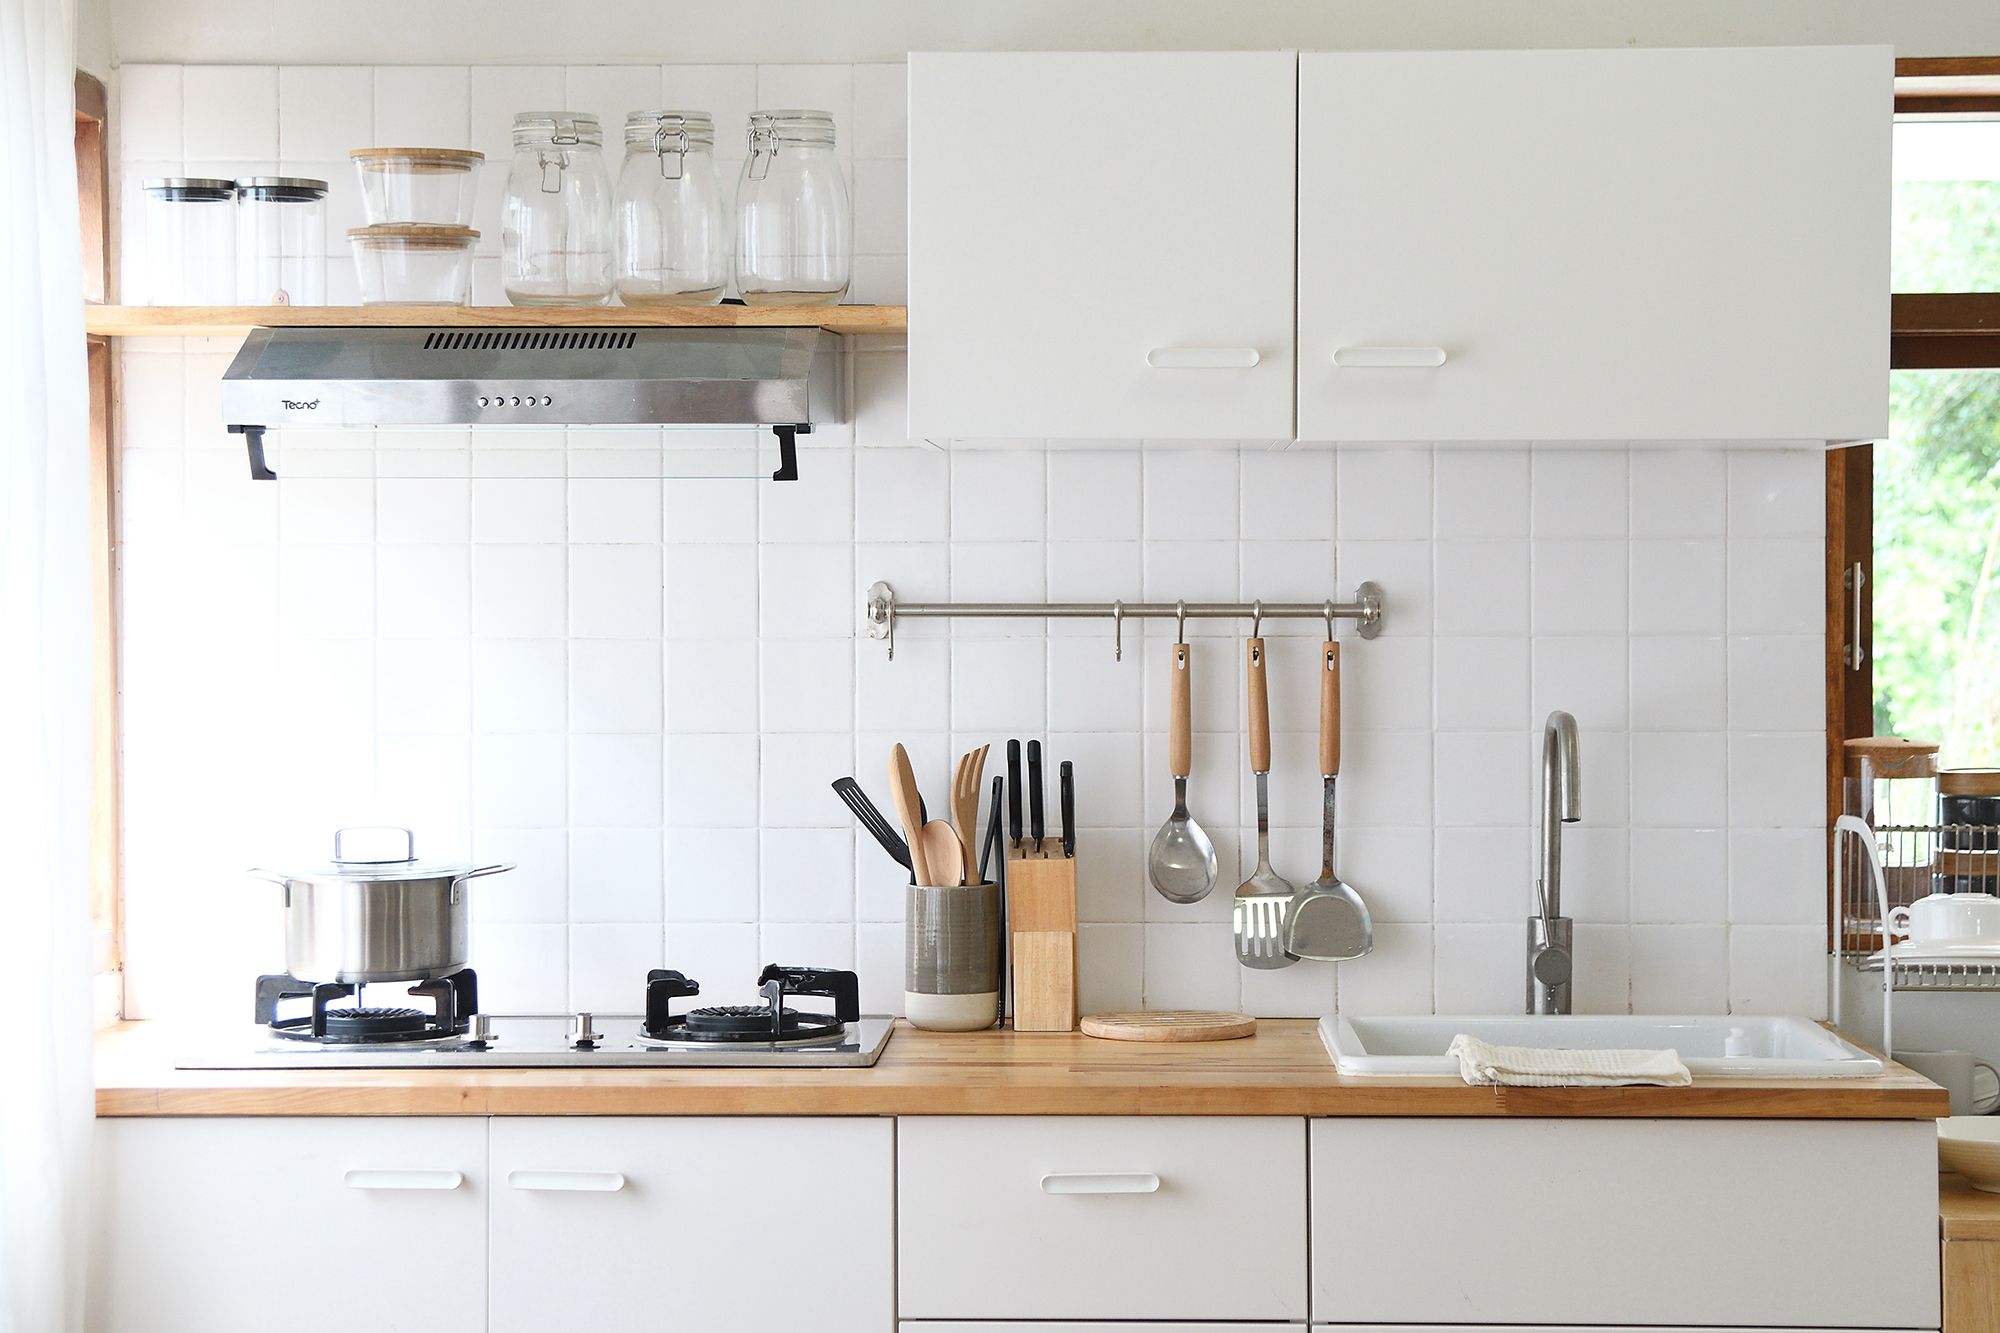 Cada cuánto tiempo deberías remplazar las especias de tu cocina